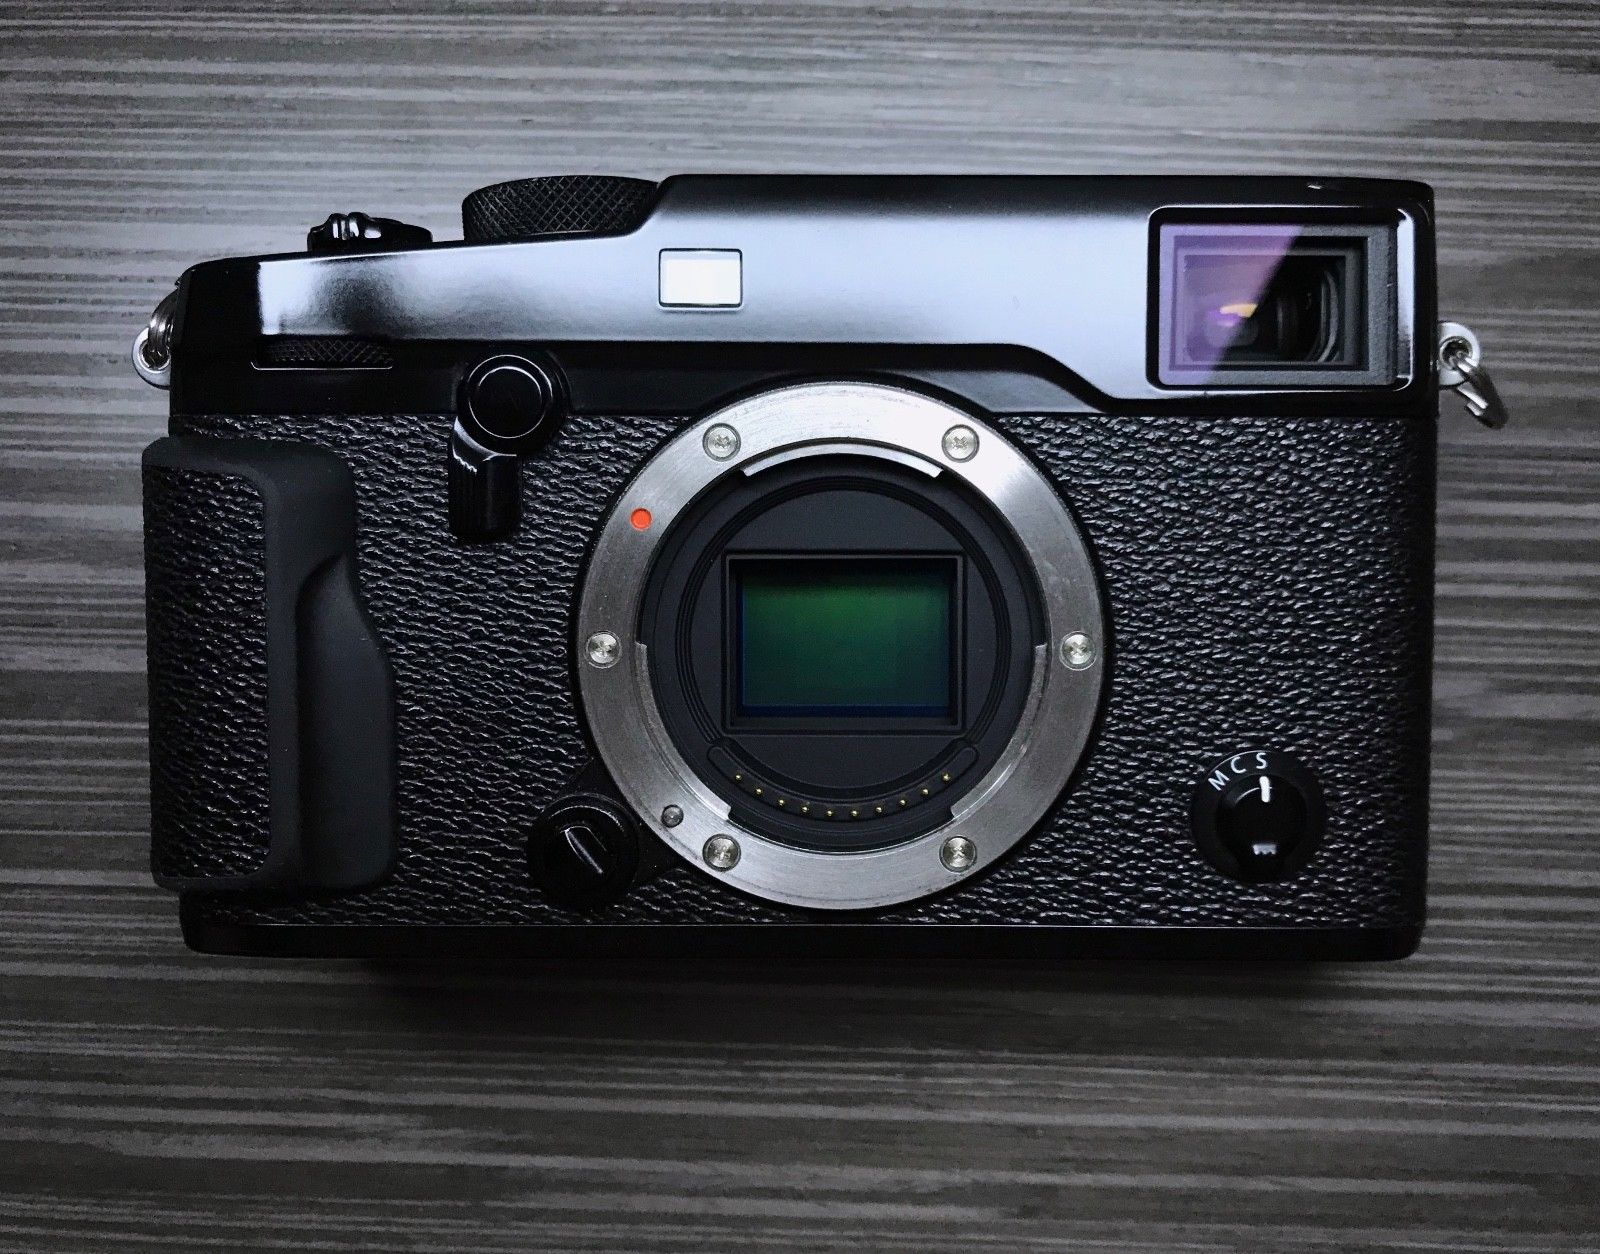 Fujifilm X-Pro2 spiegellose Systemkamera, schwarz, sehr guter Zustand.